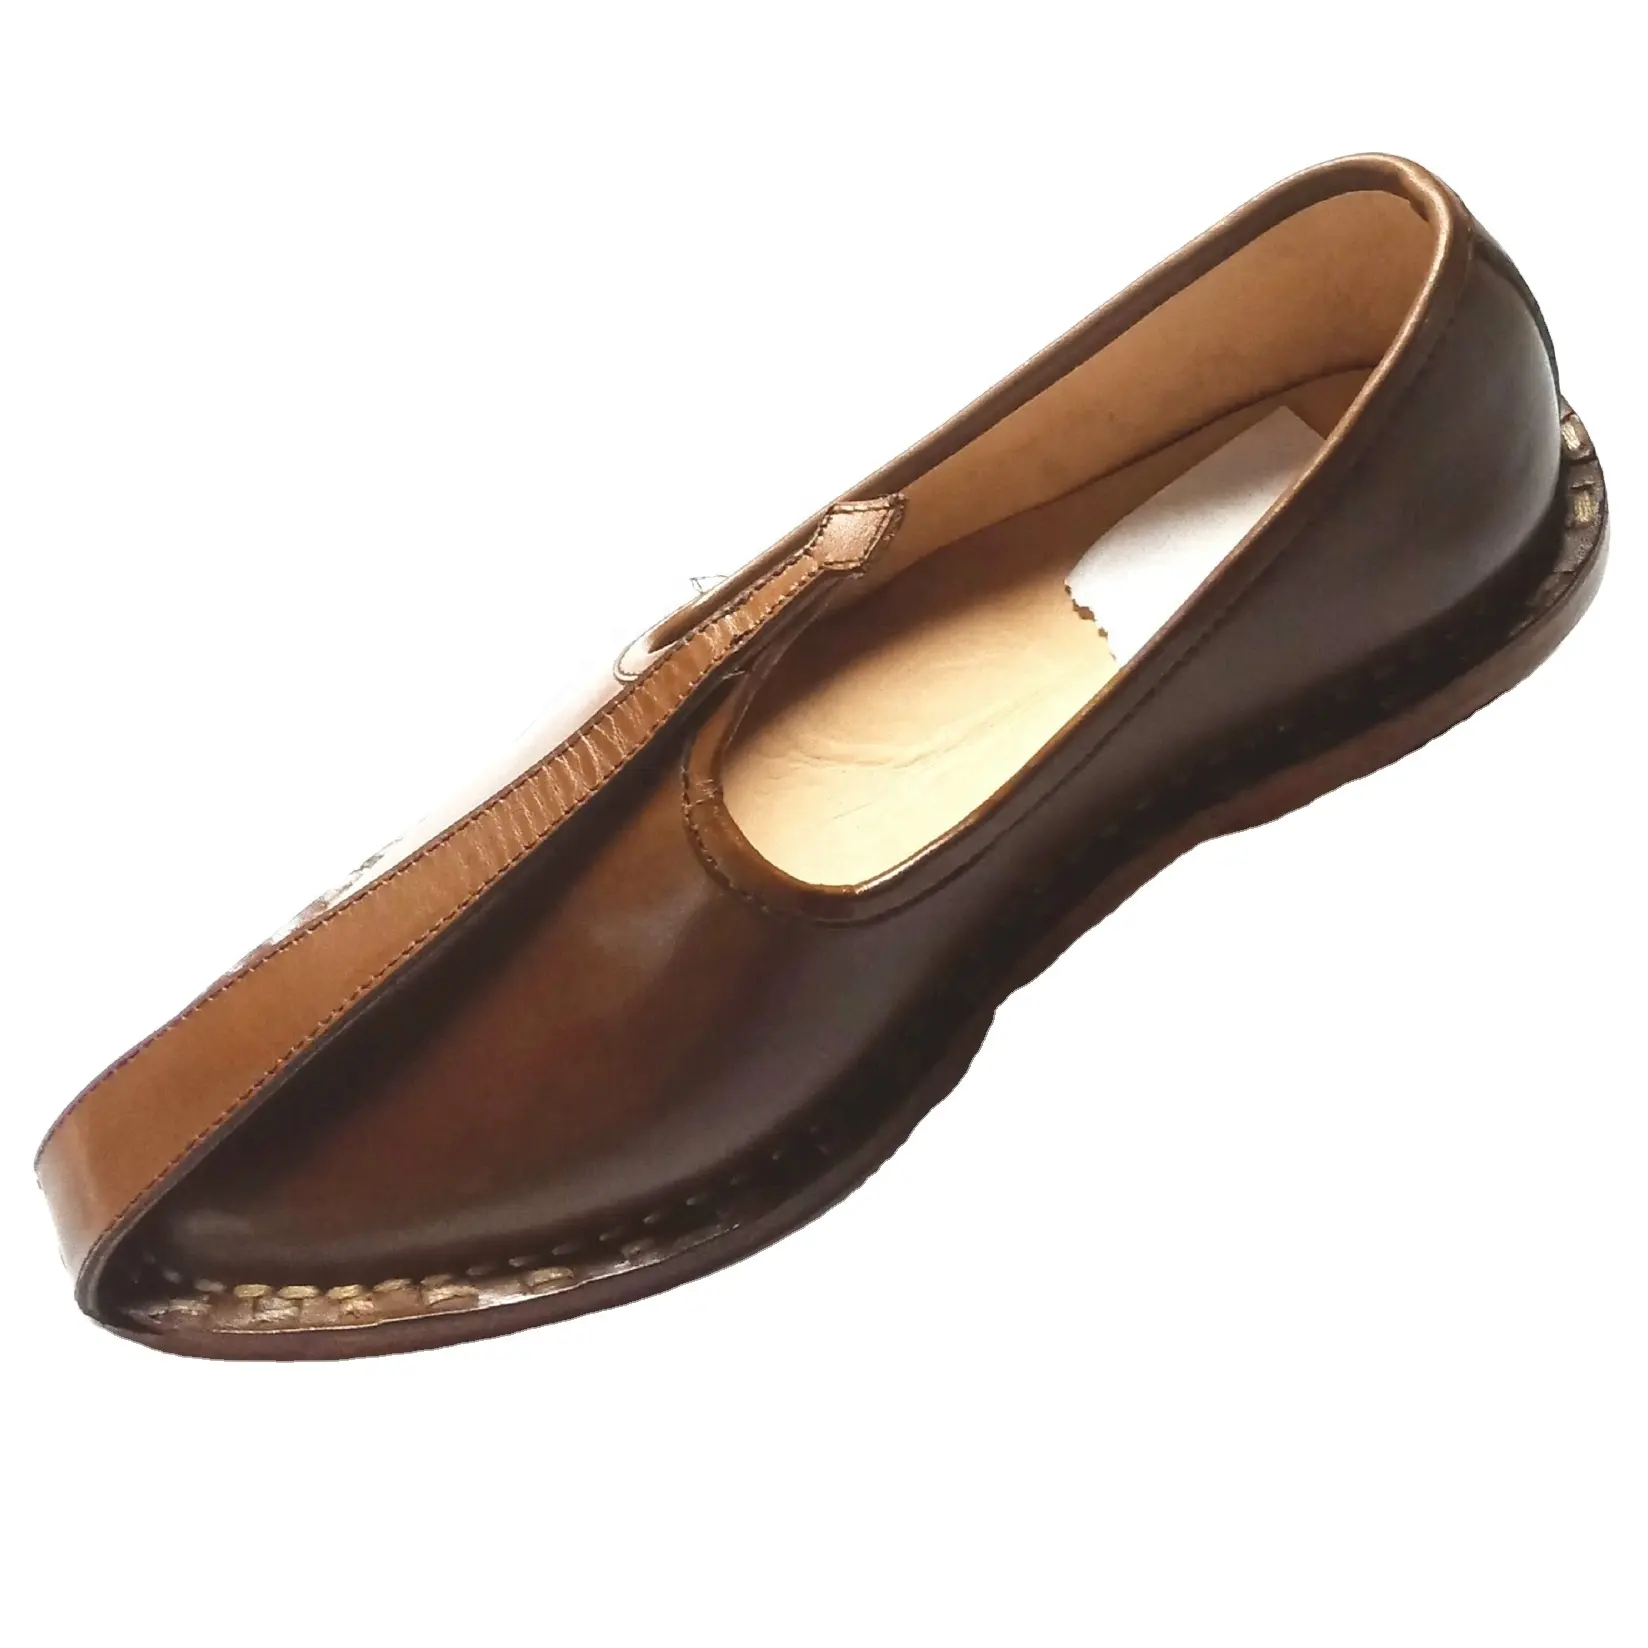 Scarpe in pelle Nagra abito da uomo mocassini nappe in pelle TPR suola in gomma scarpe formali in pura pelle originale